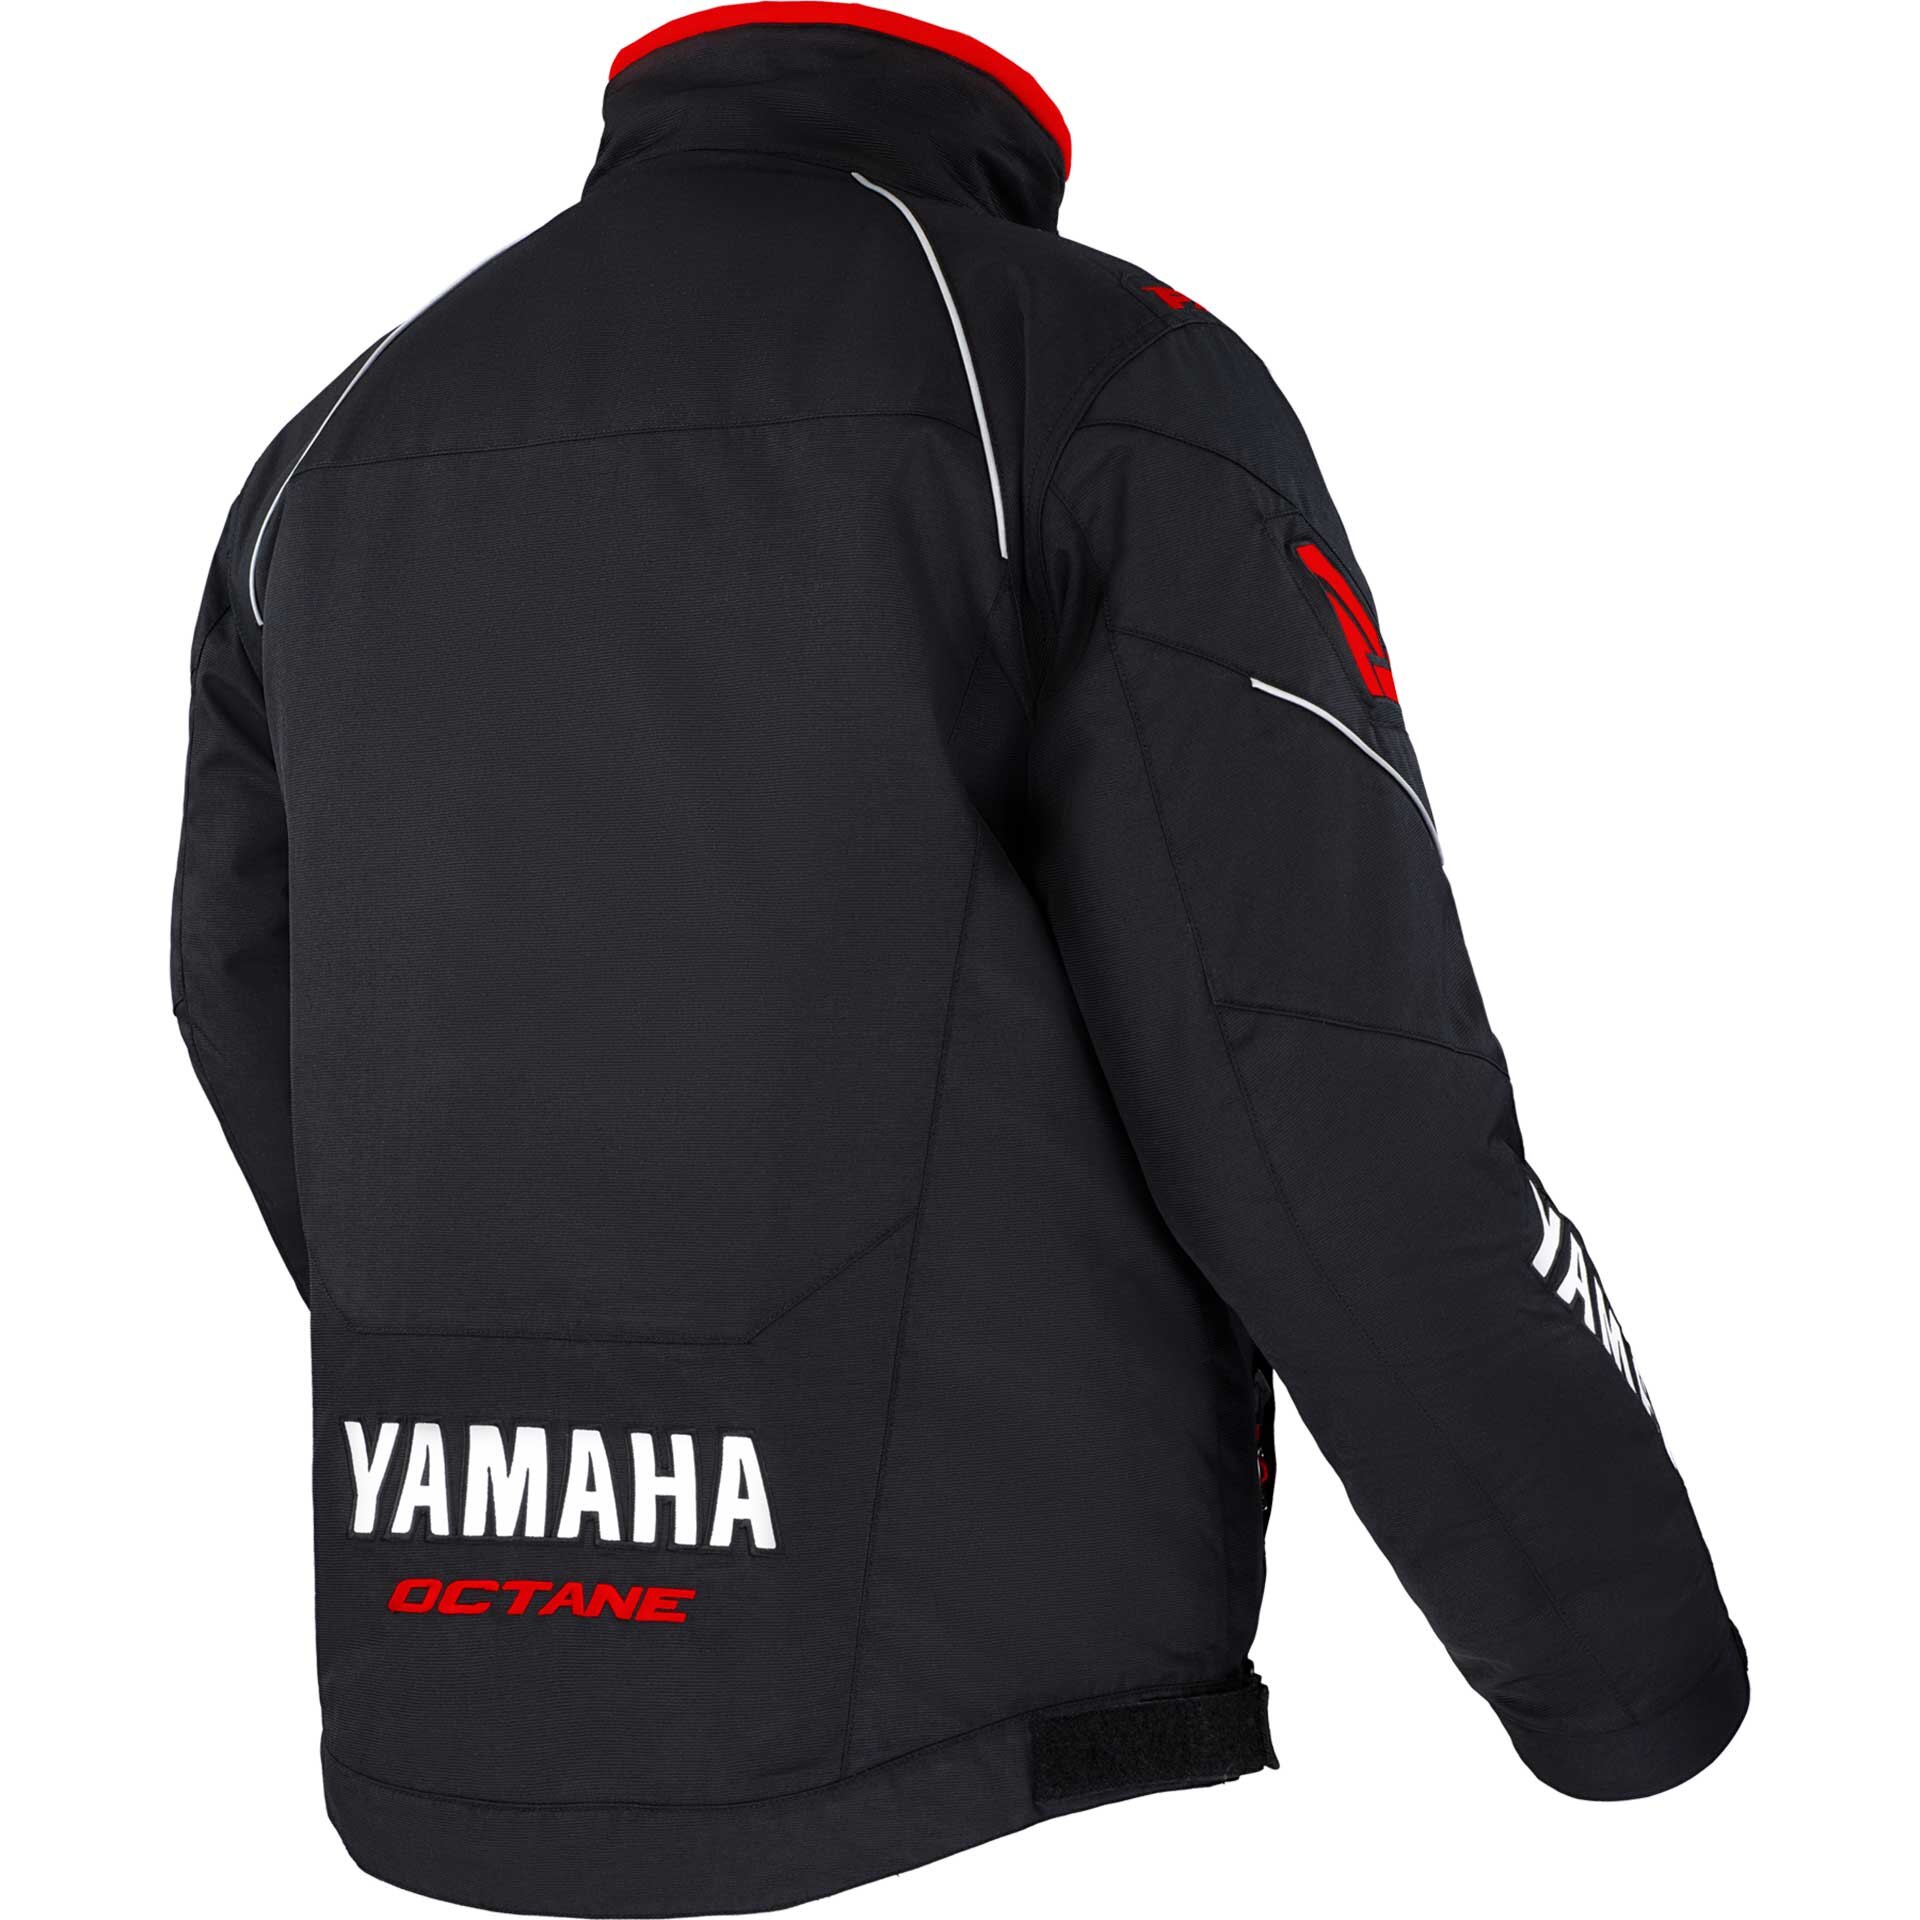 Yamaha Octane Jacket by FXR® Large red/black